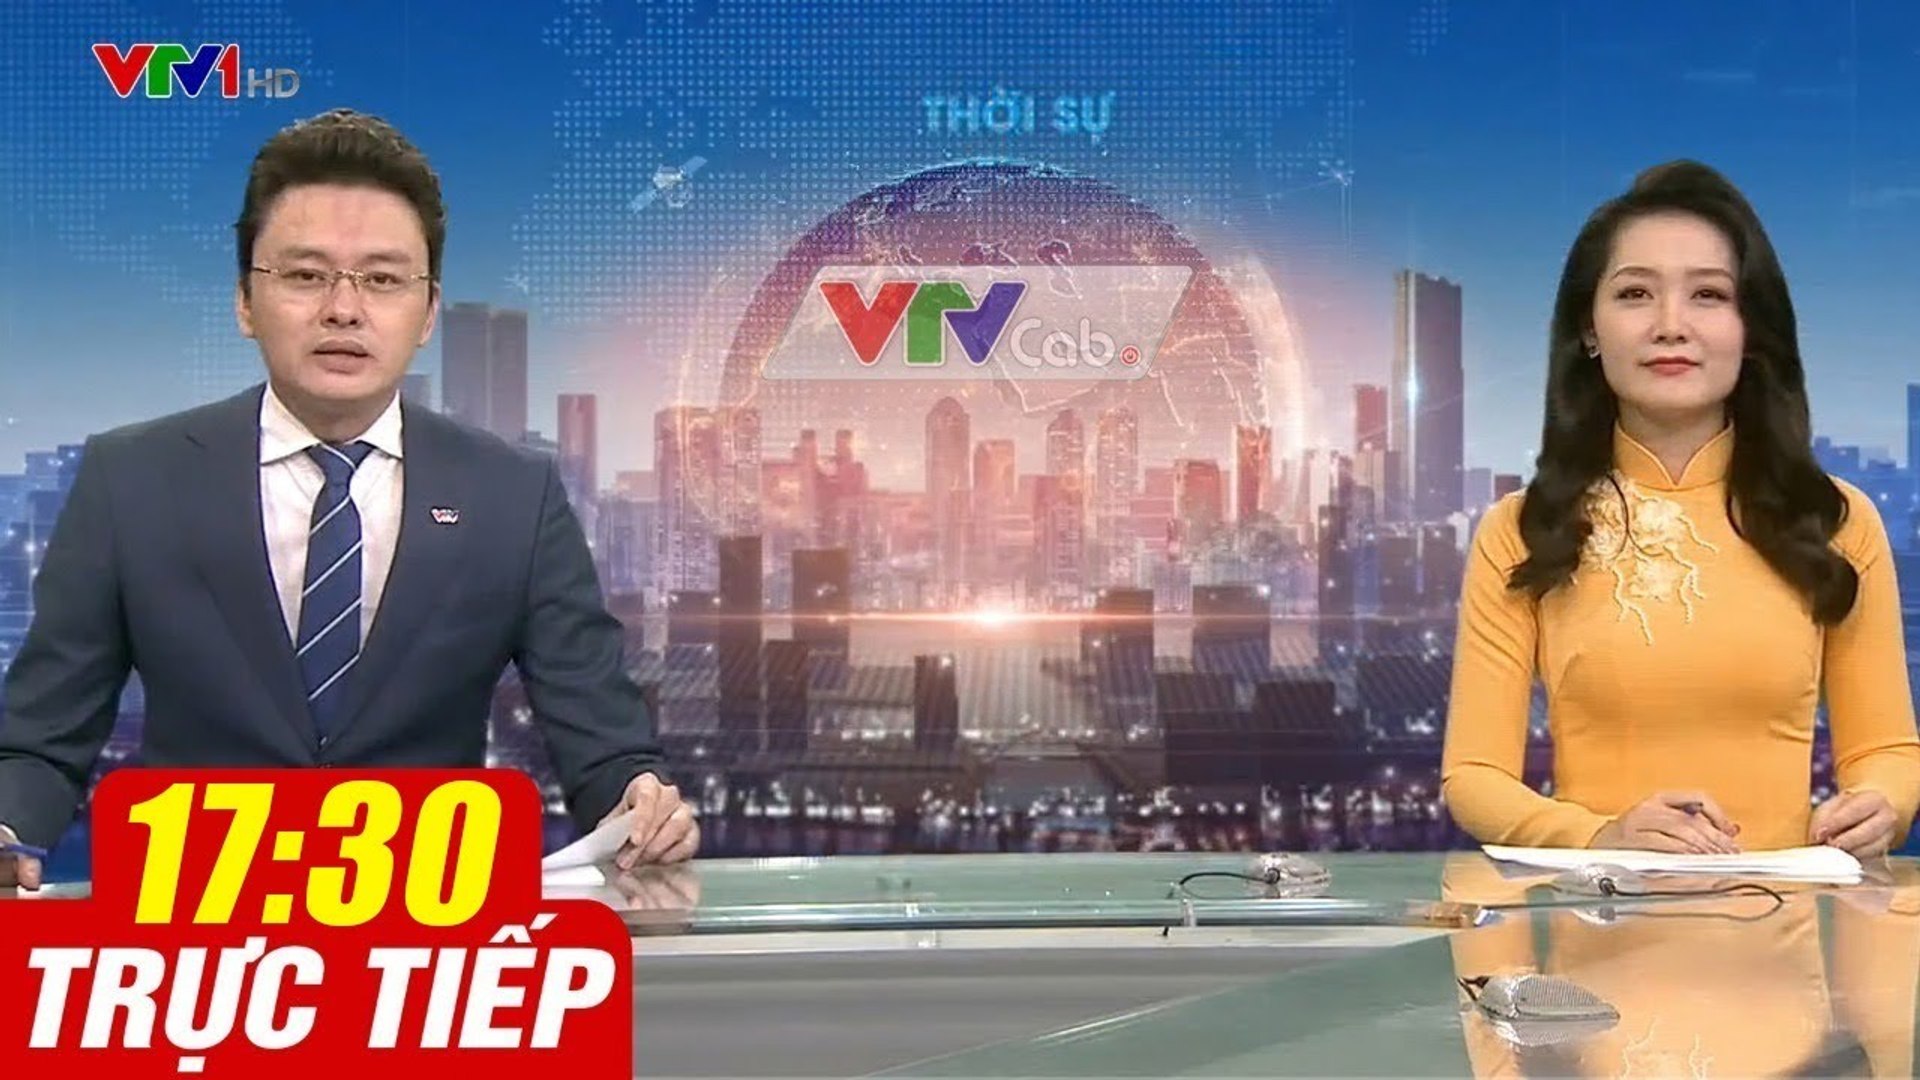 Trực Tiếp VIỆT NAM HÔM NAY 17h30 ngày 28.08.2020  Tin tức thời sự VTV1 mới nhất hôm nay